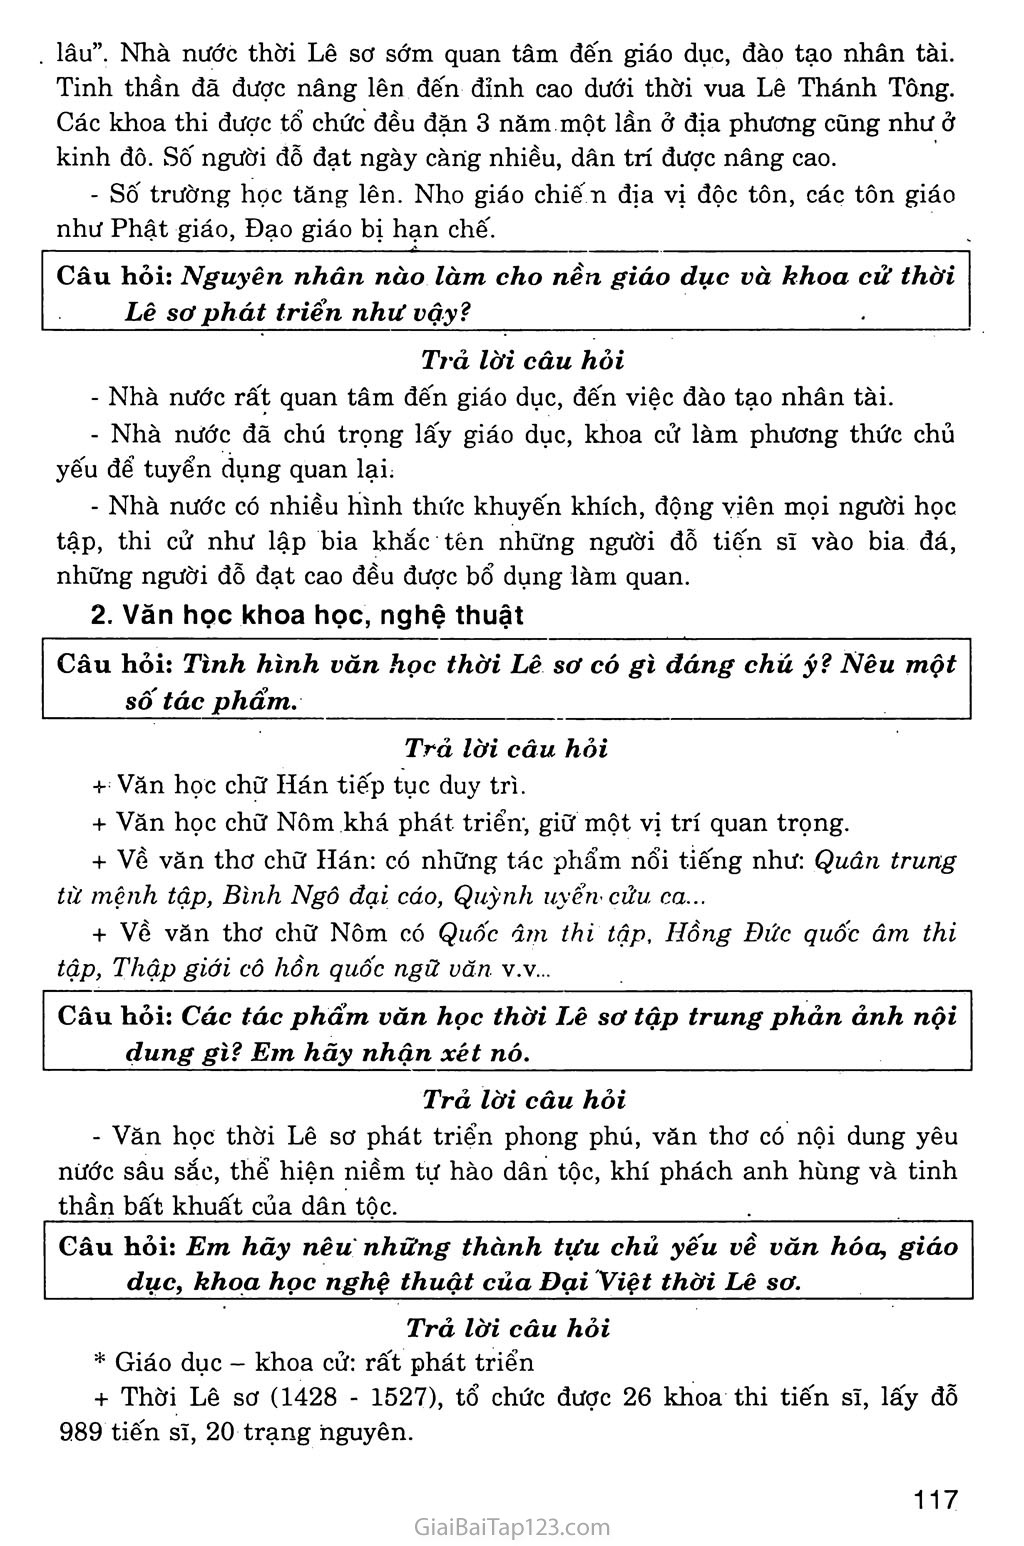 Bài 20: Nước Đại Việt thời Lê Sơ (1428 - 1527) trang 8